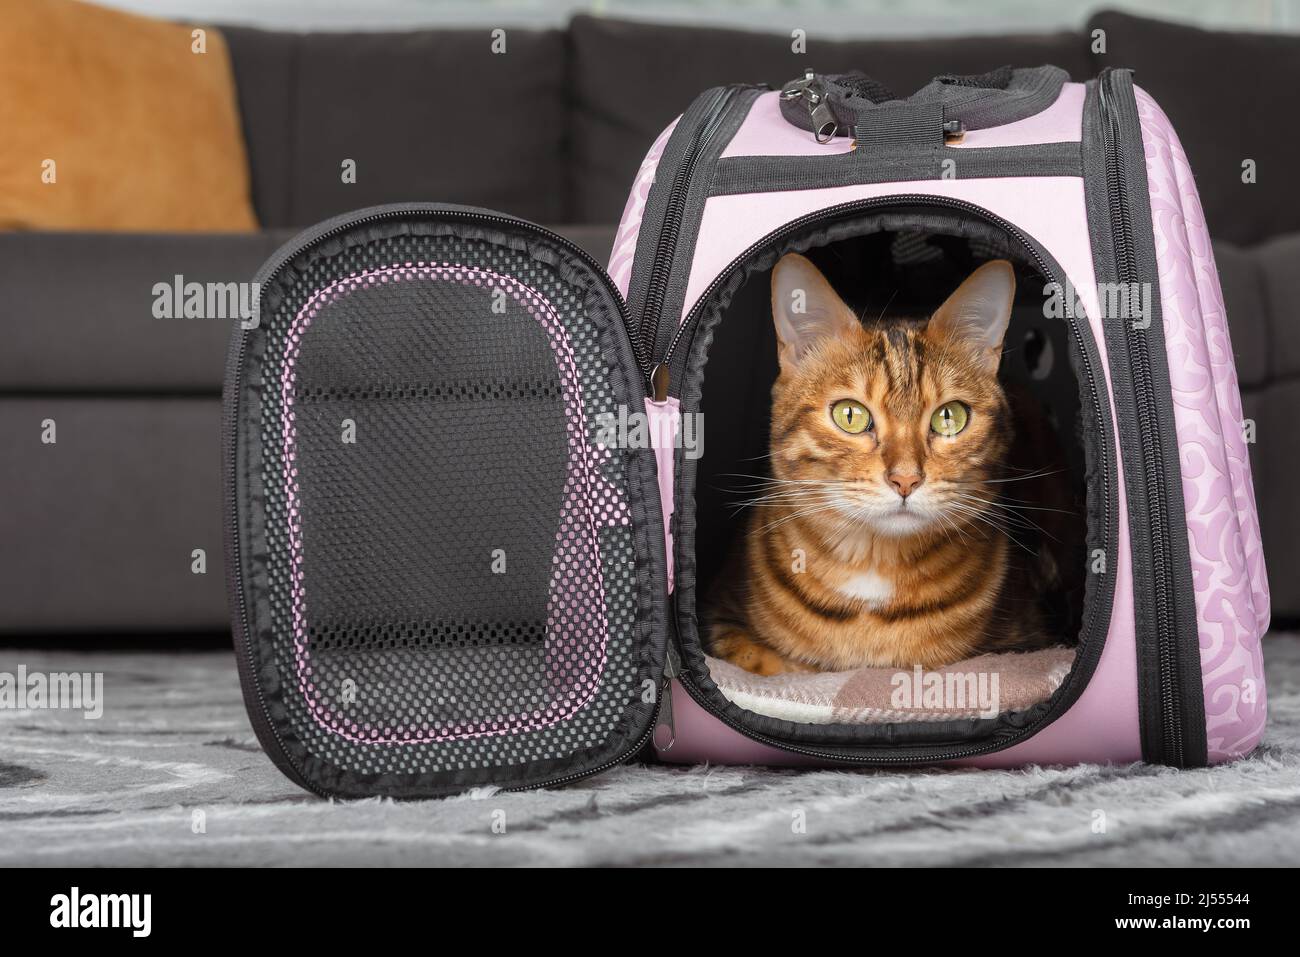 Le chat sort du sac rose. Sac de transport pour animaux. Banque D'Images